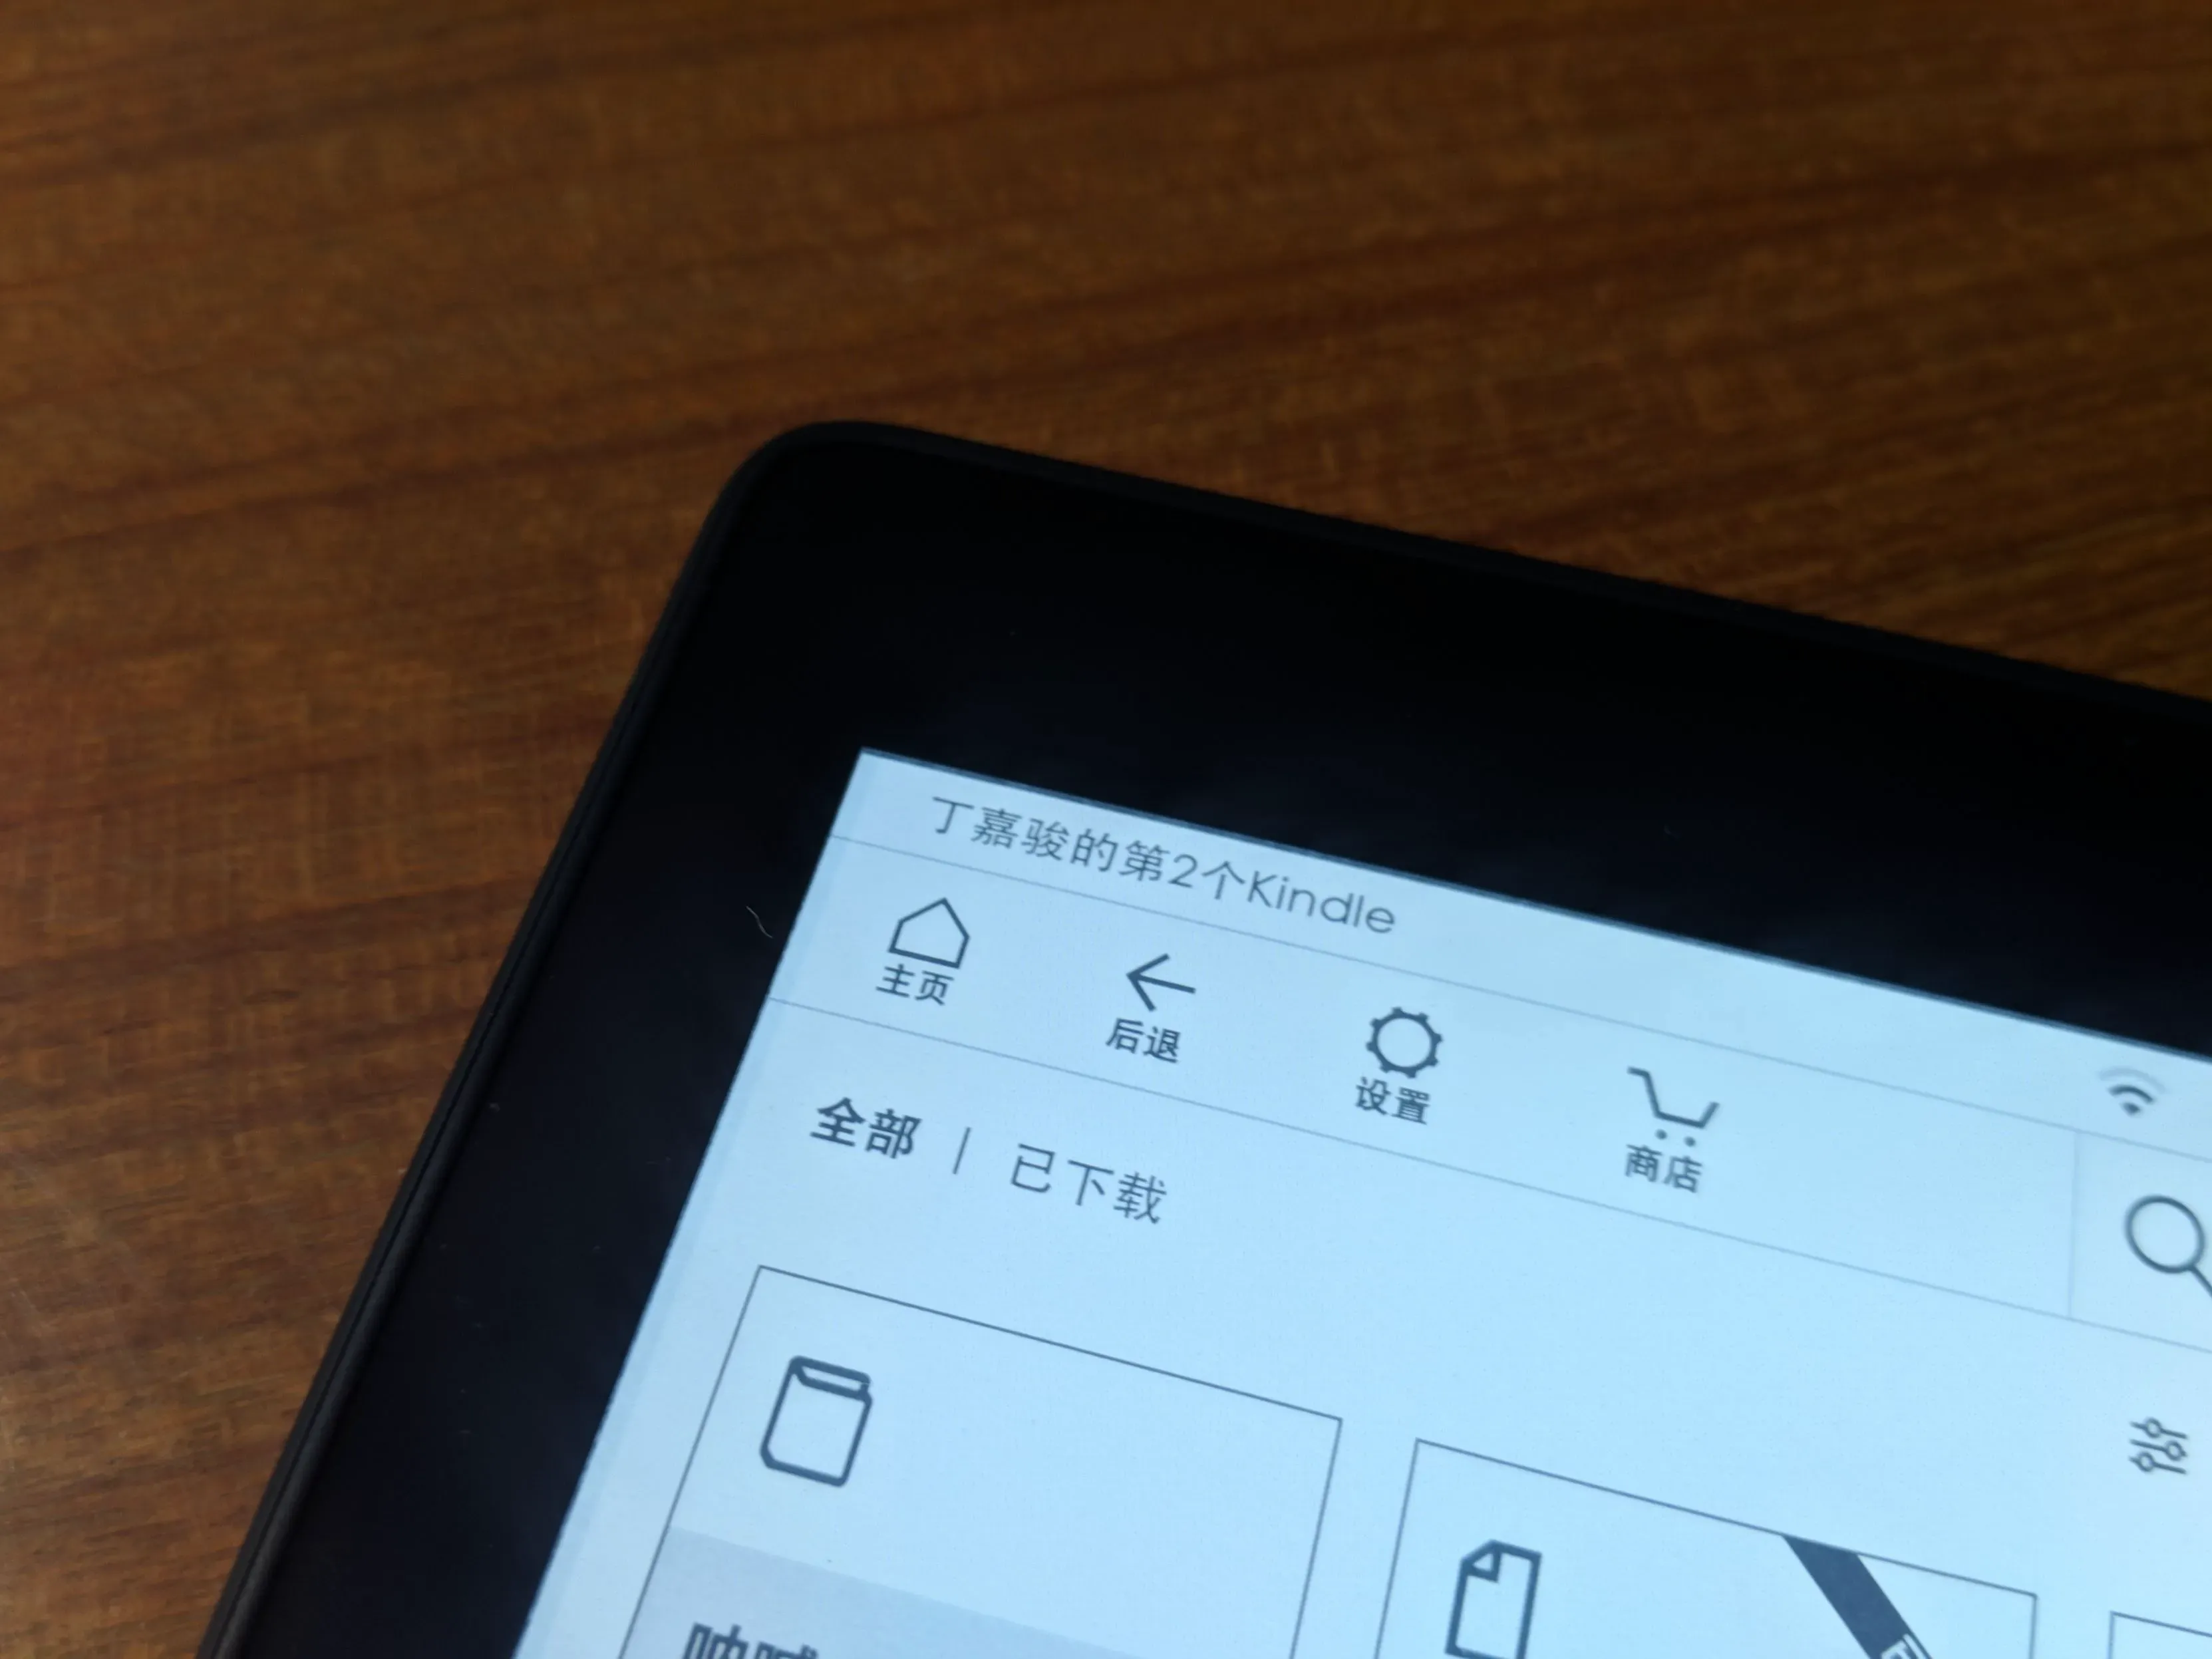 主页上显示的默认设备名称是「丁嘉骏的第2个Kindle」。